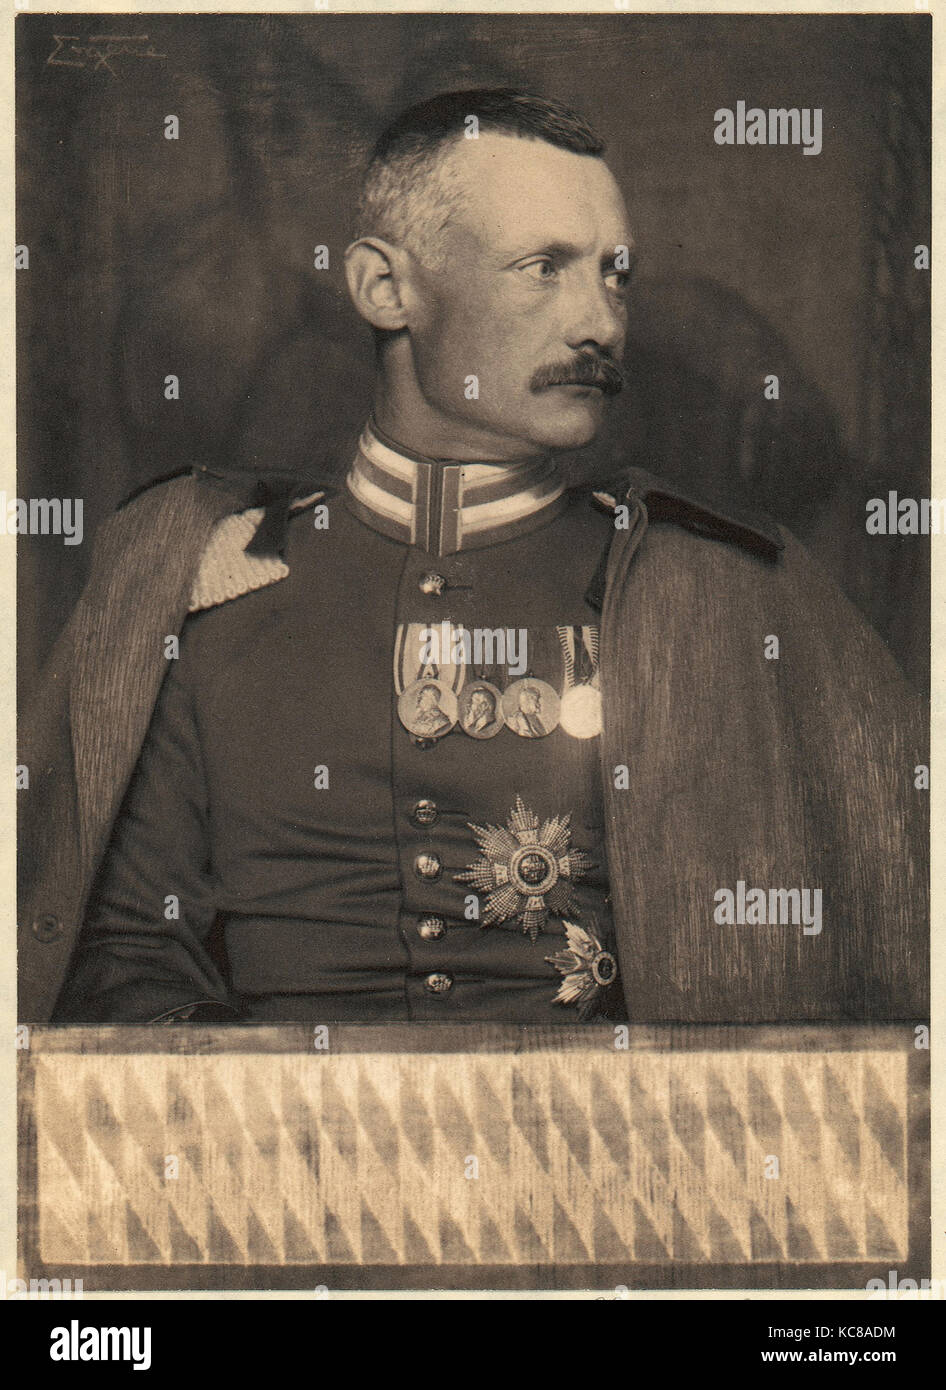 Kronprinz Rupprecht von Bayern, Frank Eugene, 1900 - 1908 Stockfoto